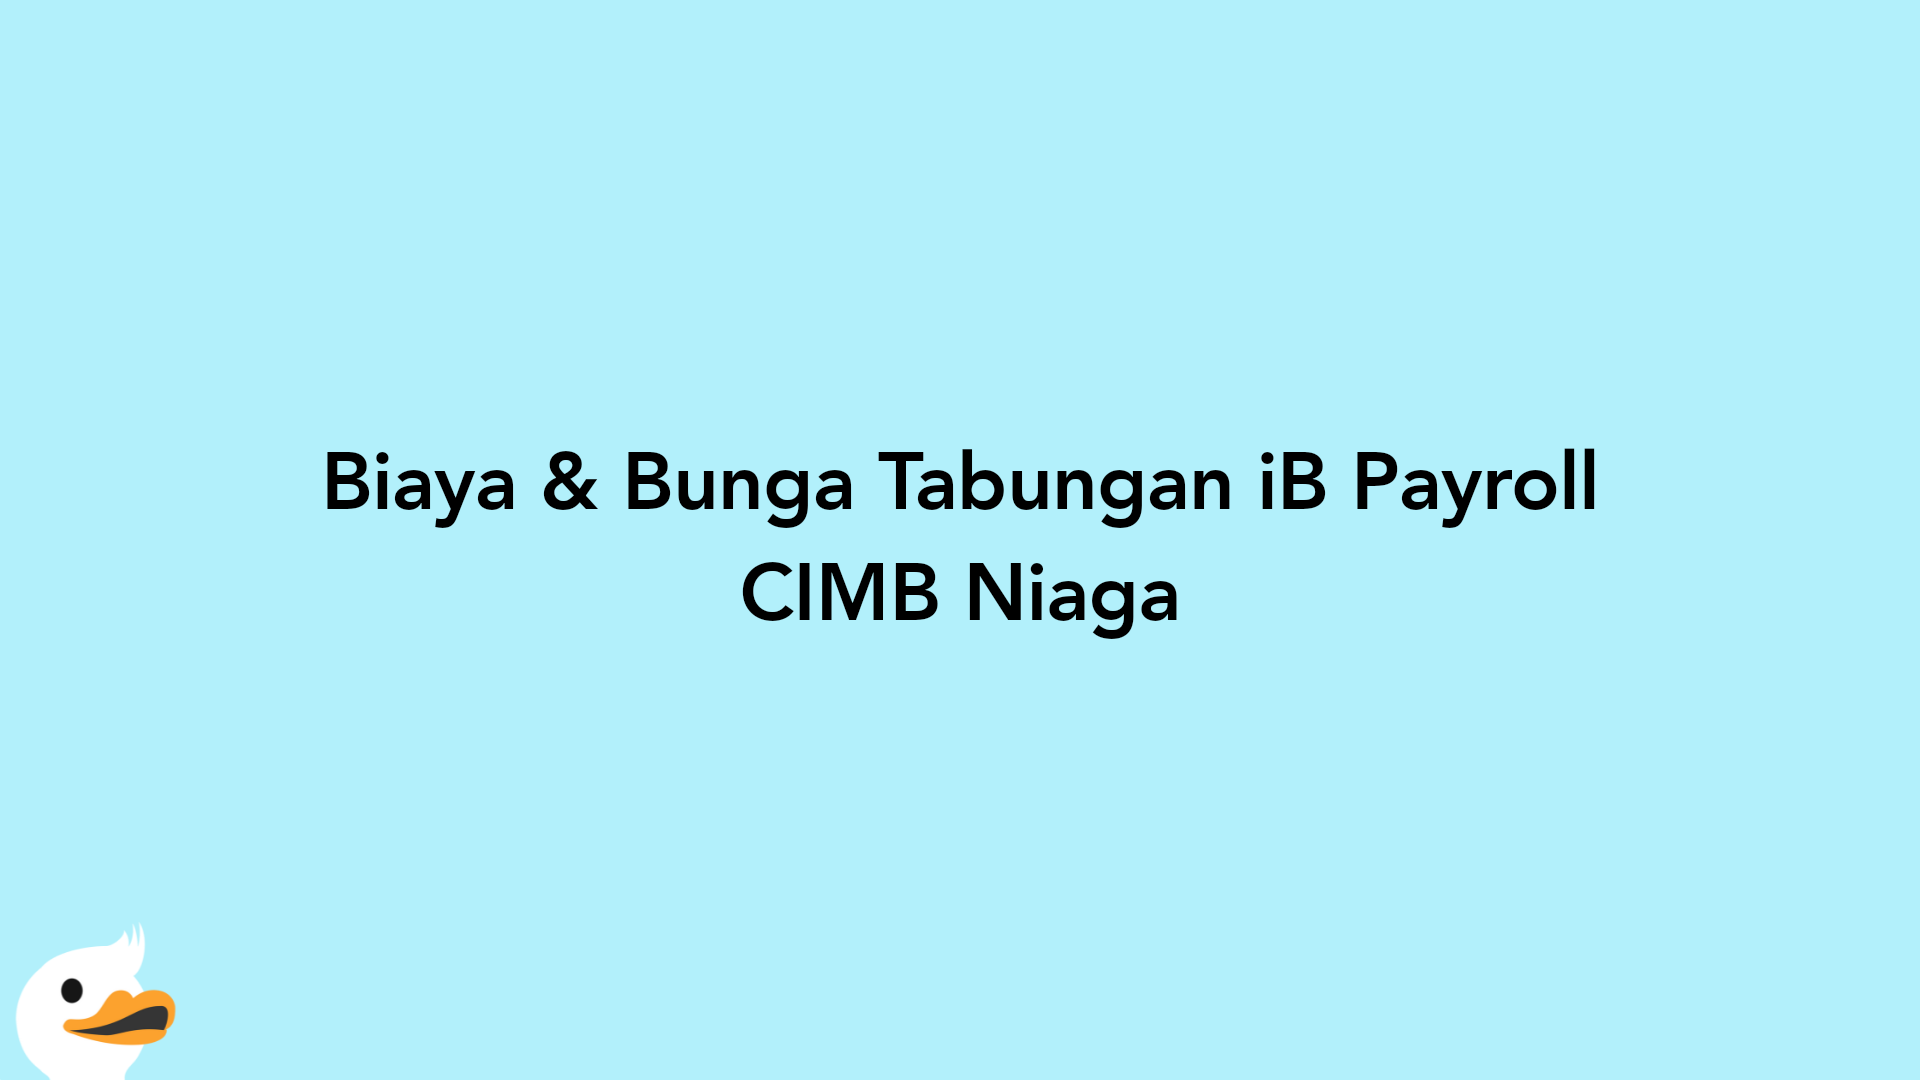 Biaya & Bunga Tabungan iB Payroll CIMB Niaga